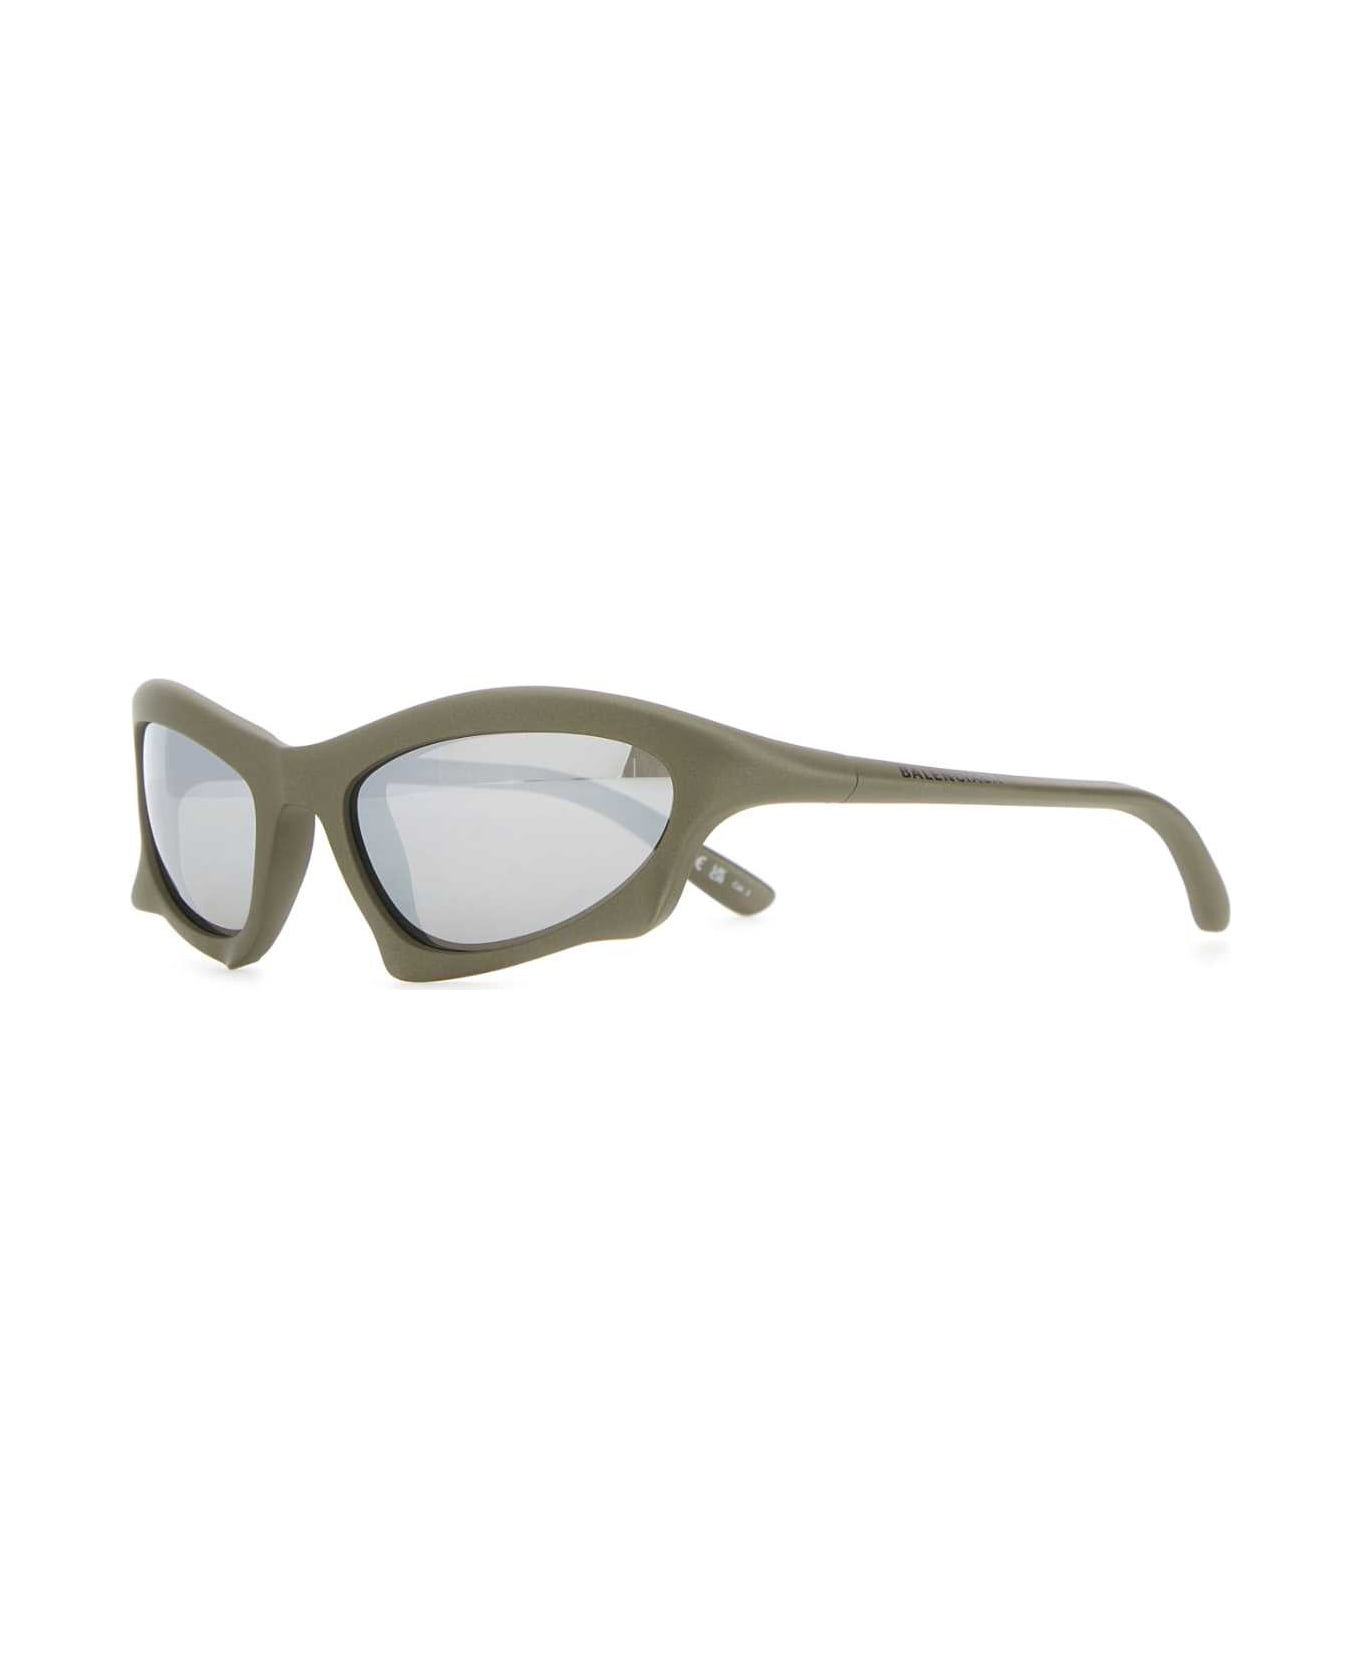 Balenciaga Silver Acetate Bat Rectangle Sunglasses - SILVER